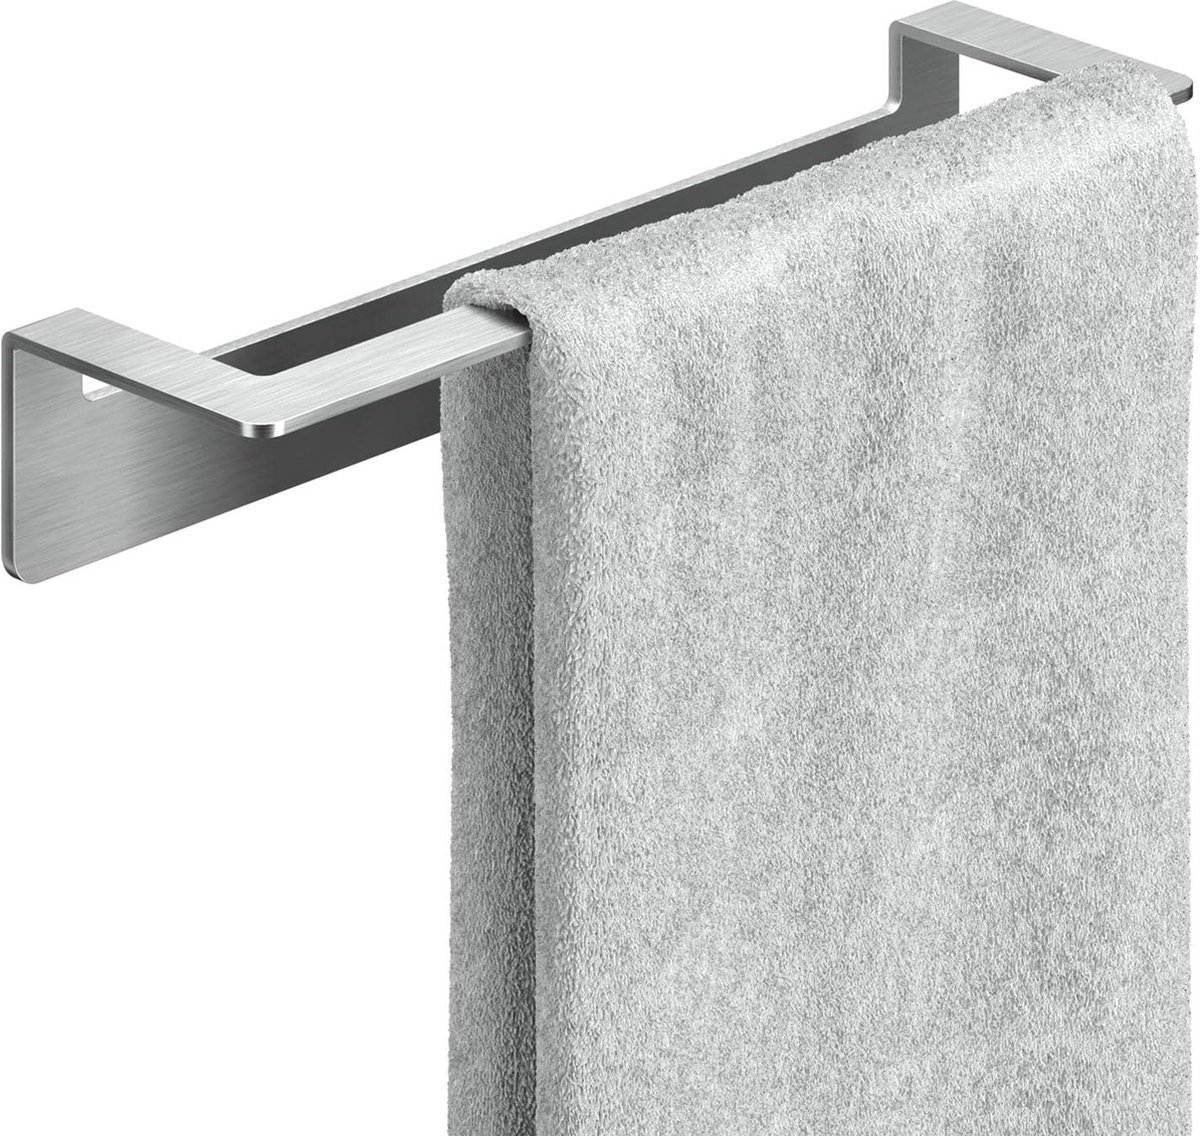 Handdoekstang roestvrij staal zonder boren 30cm - handdoekhouder badkamer zelfklevend